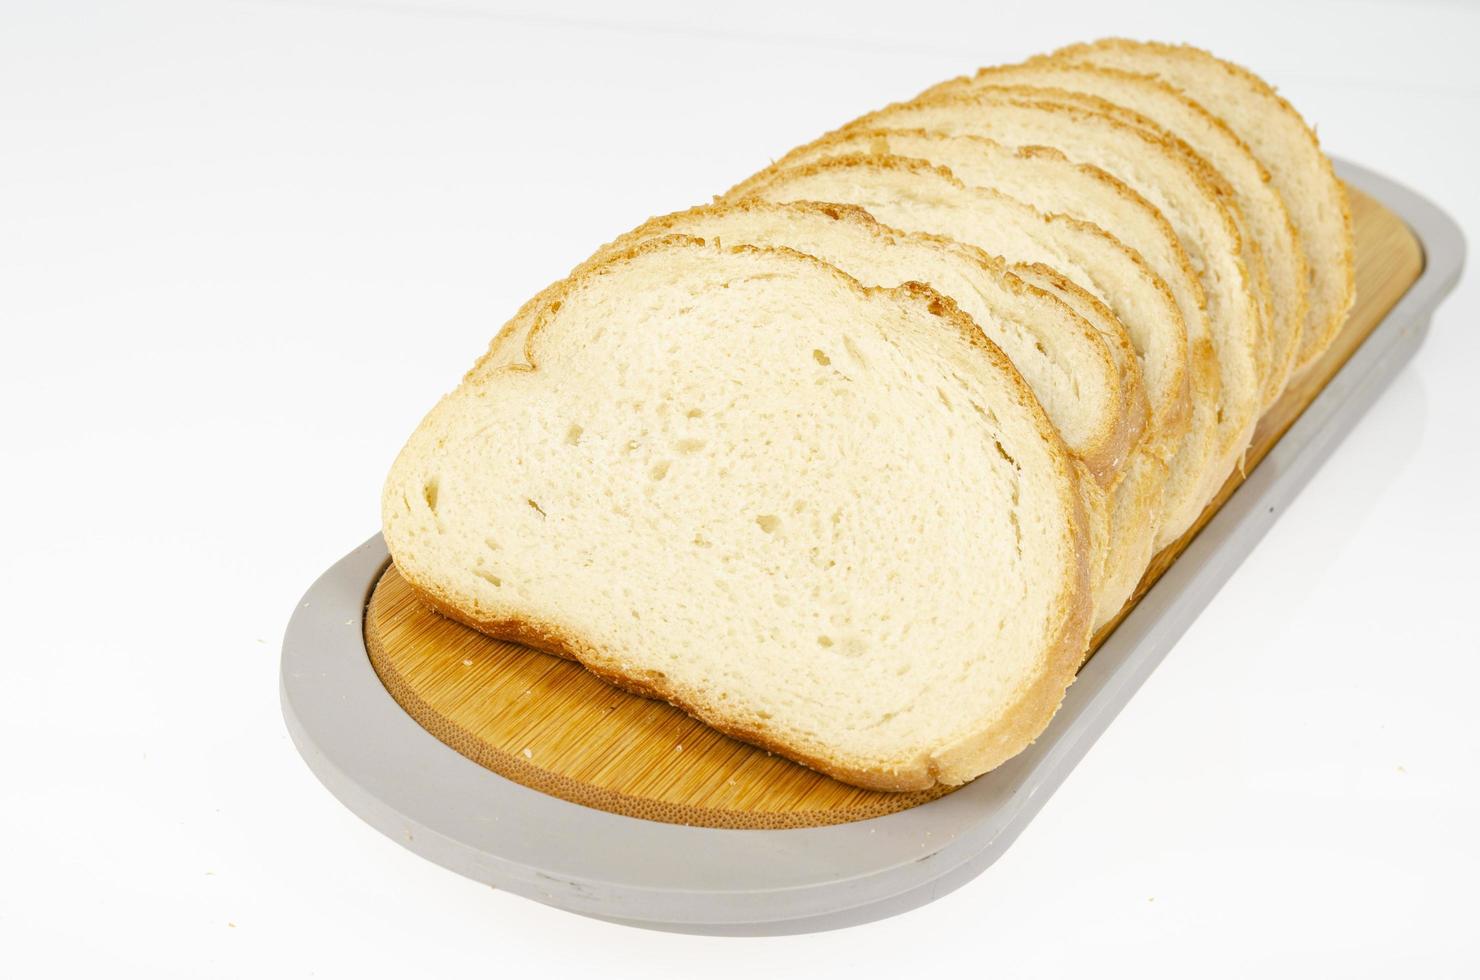 les sandwichs au pain de blé tranché. studio photo